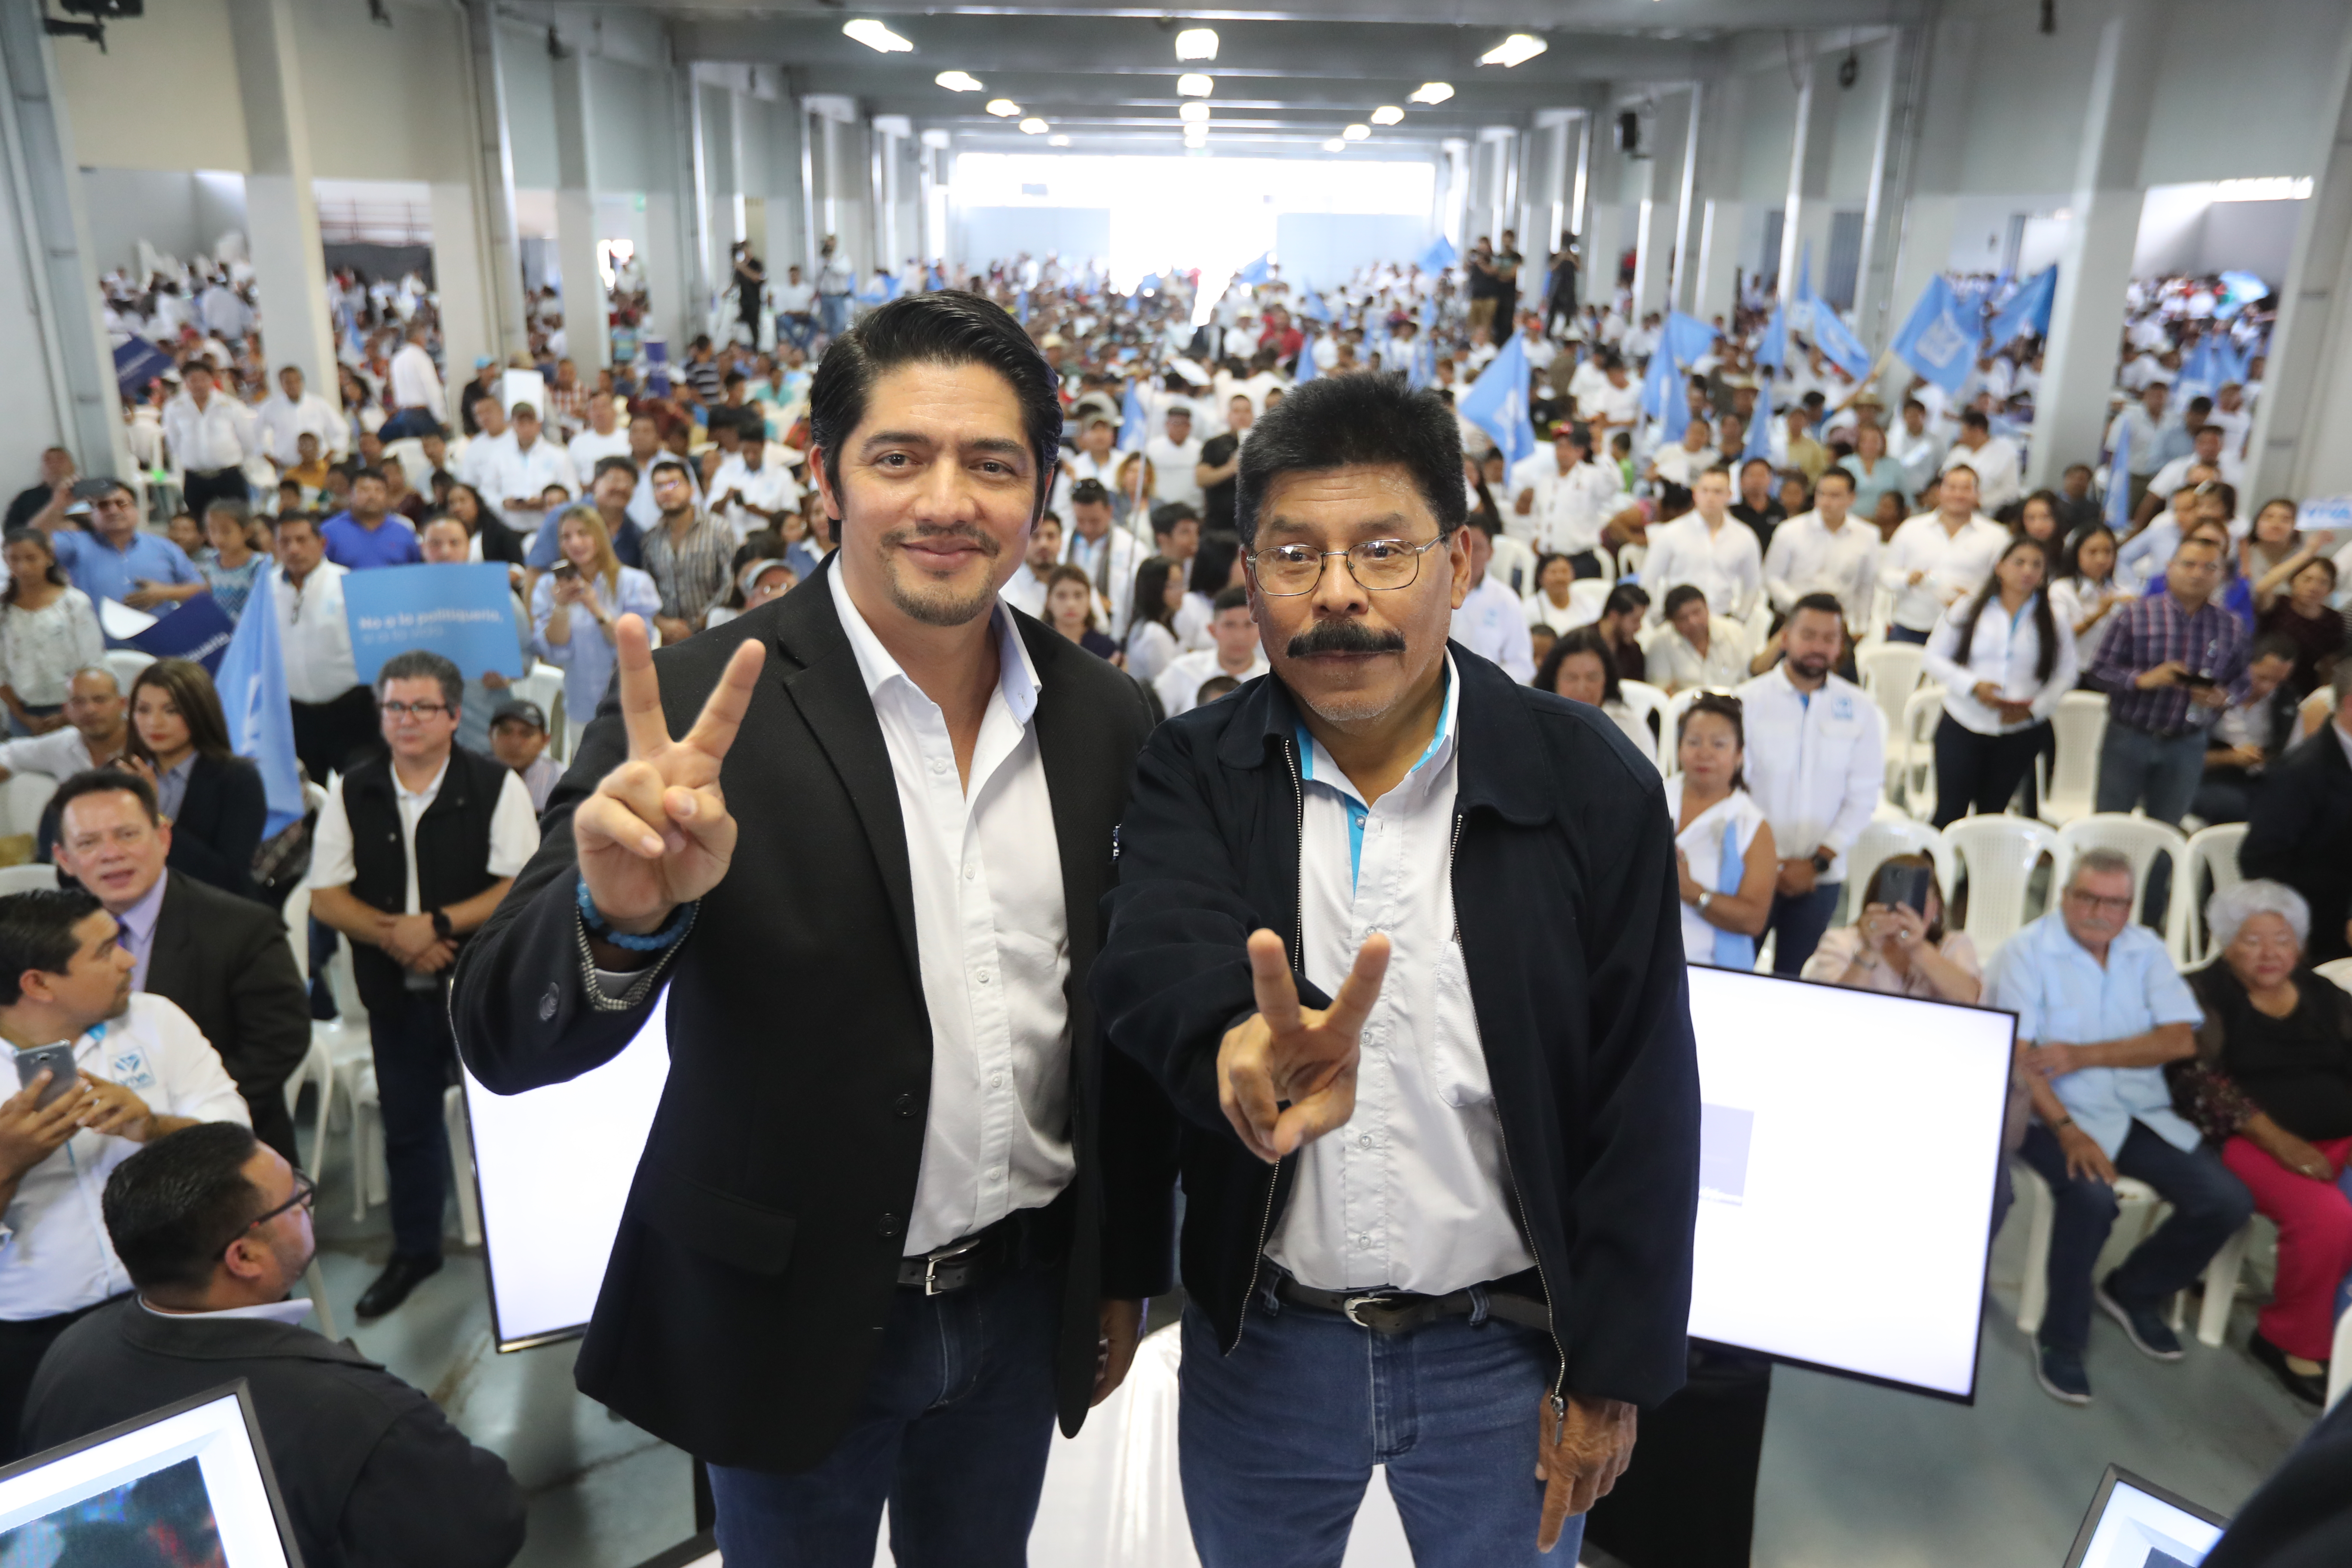 Juan Carlos Eggenberger y Antonio Rodríguez López fueron proclamados como binomio presidencial por el partido Viva (Foto Prensa Libre: Erick Ávila)

